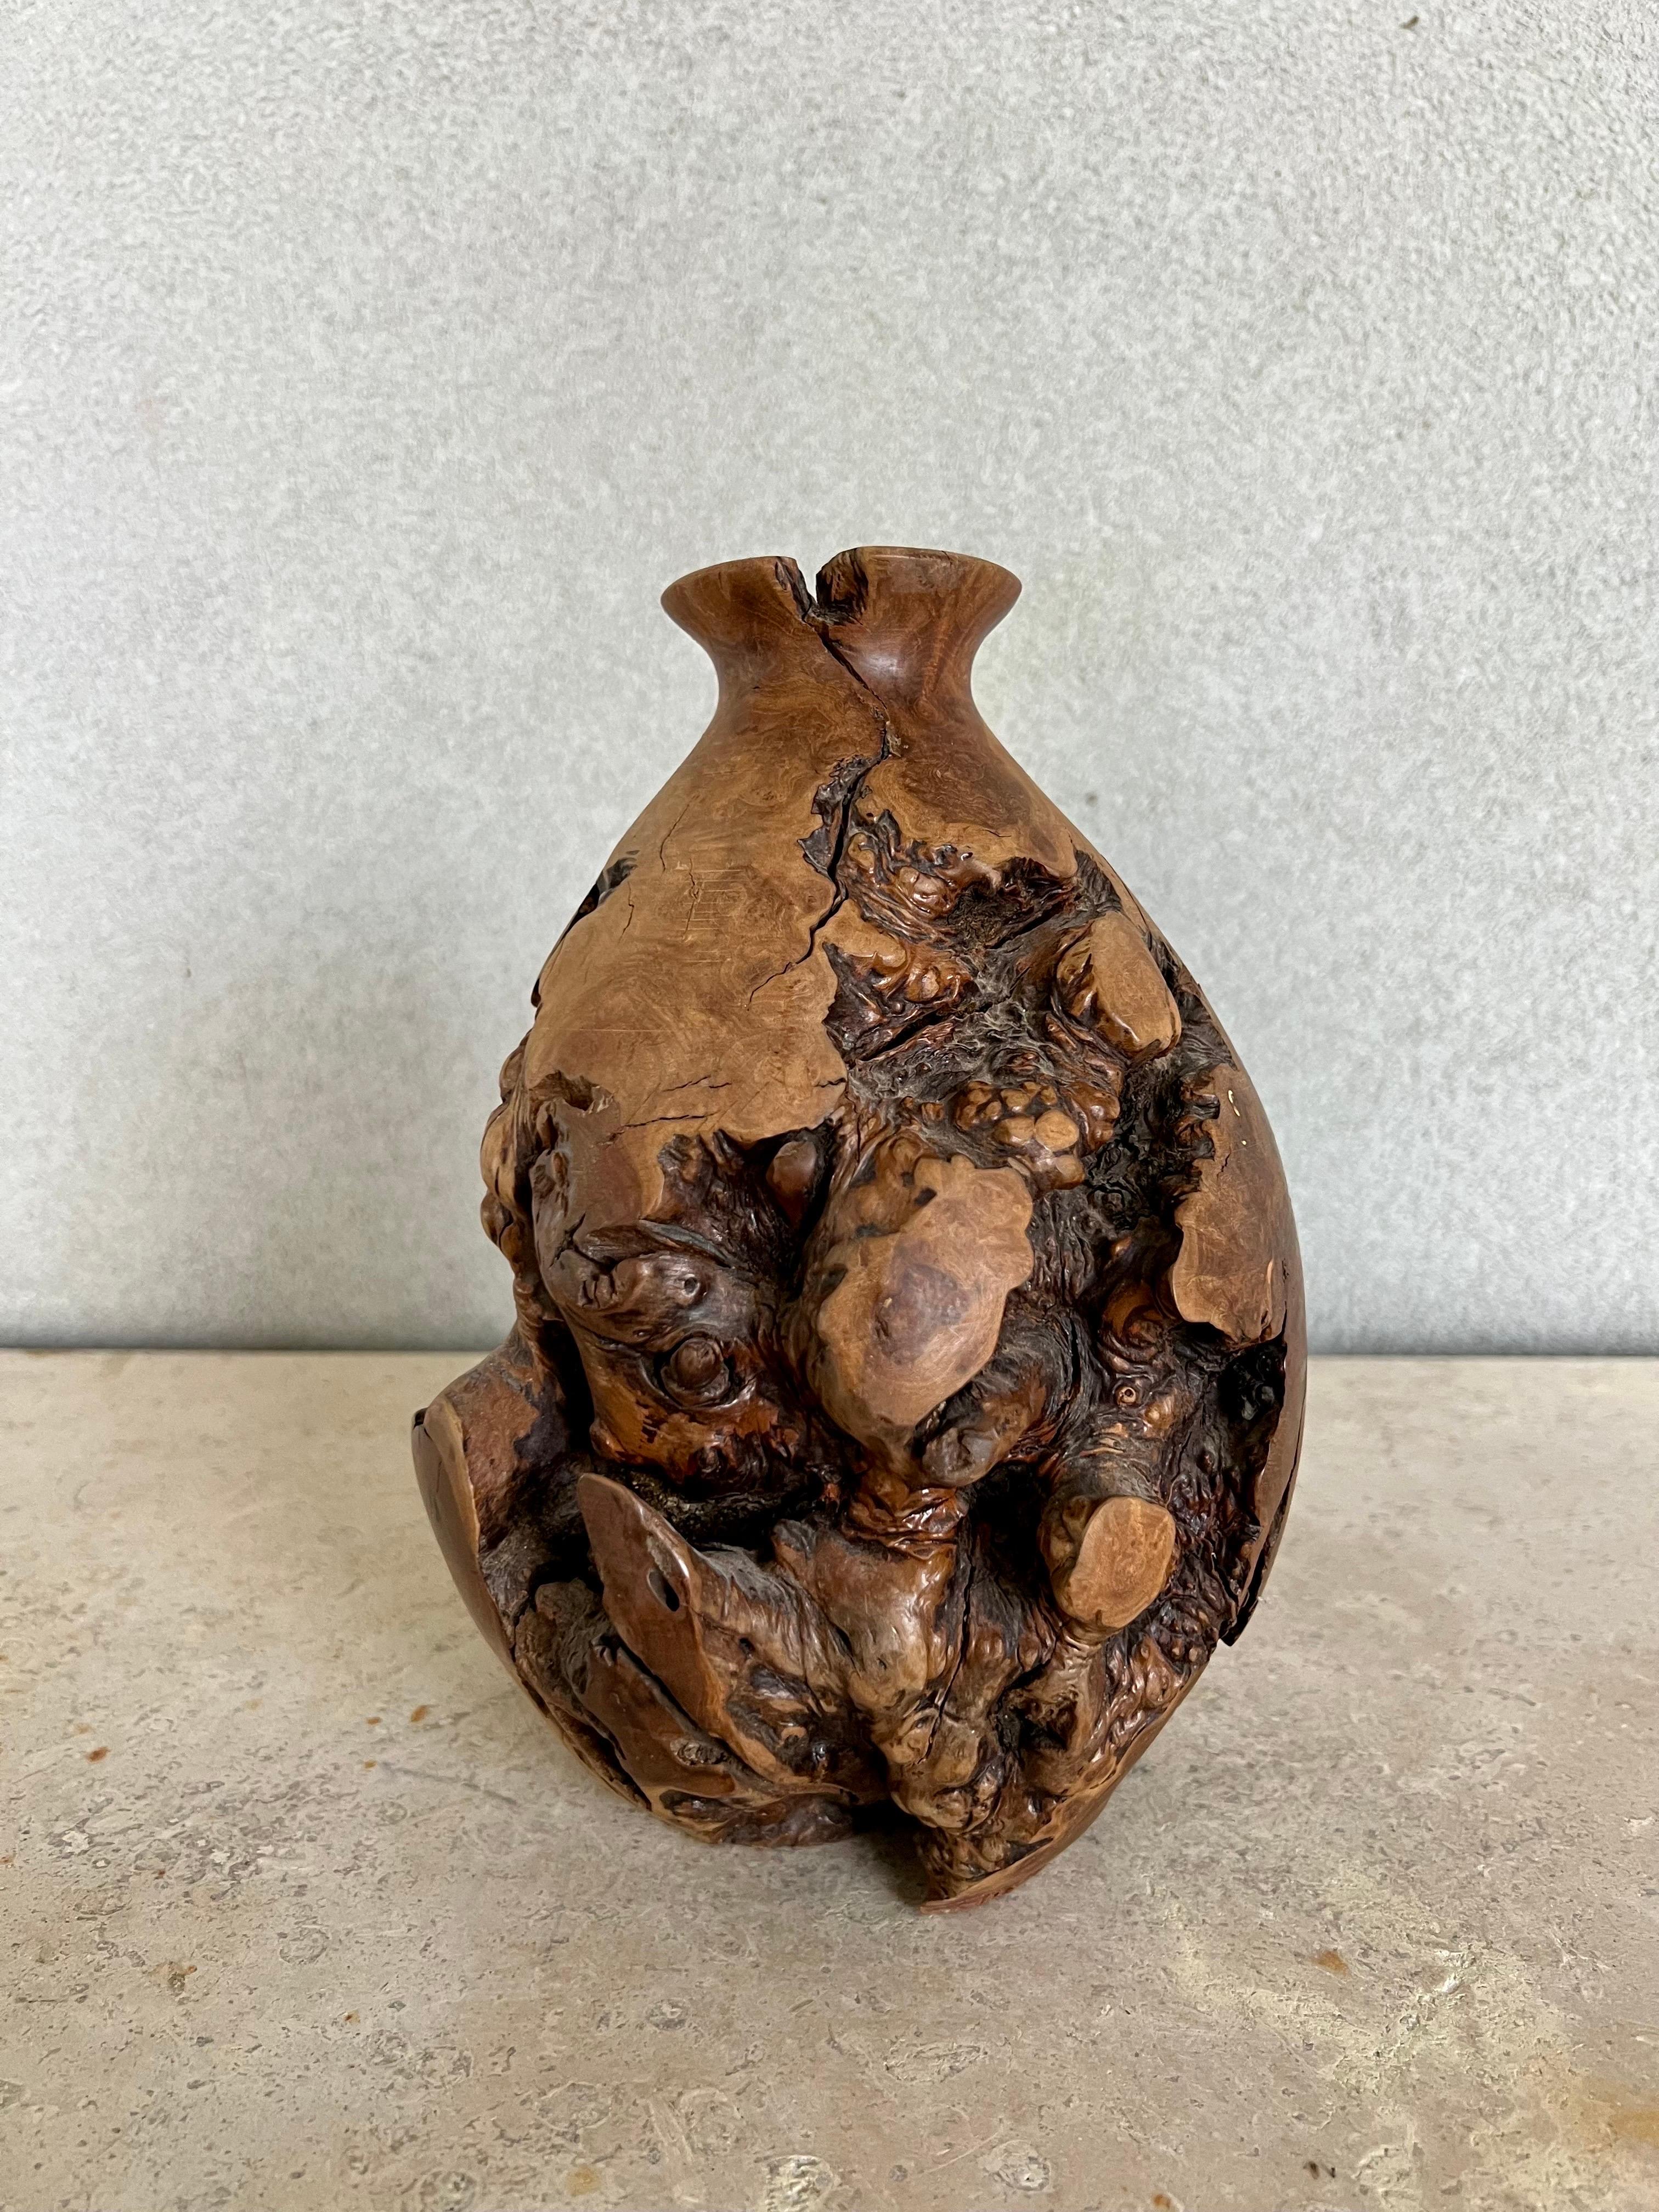 Vase en bois tourné à la main, unique en son genre, fabriqué à partir de racines de manzanita. Signé par un artiste inconnu en bas.